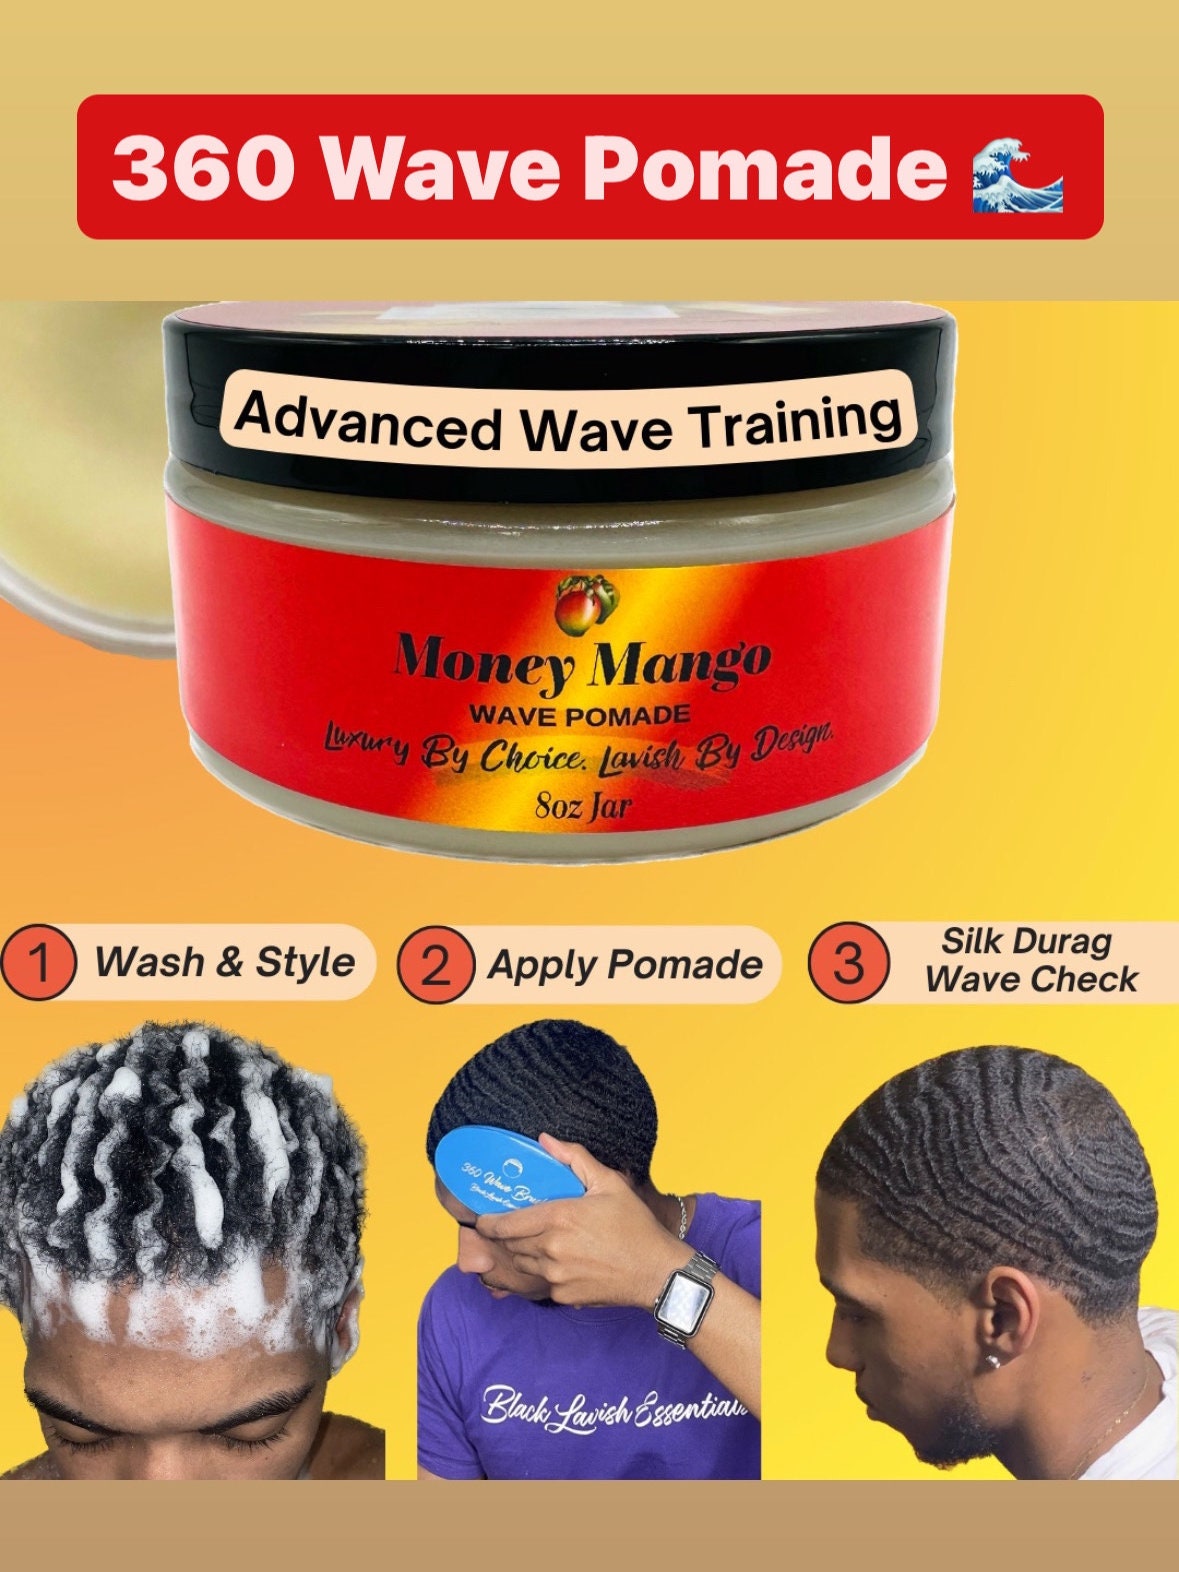 Green Durag  Waves hairstyle men, Black men hairstyles, Waves haircut